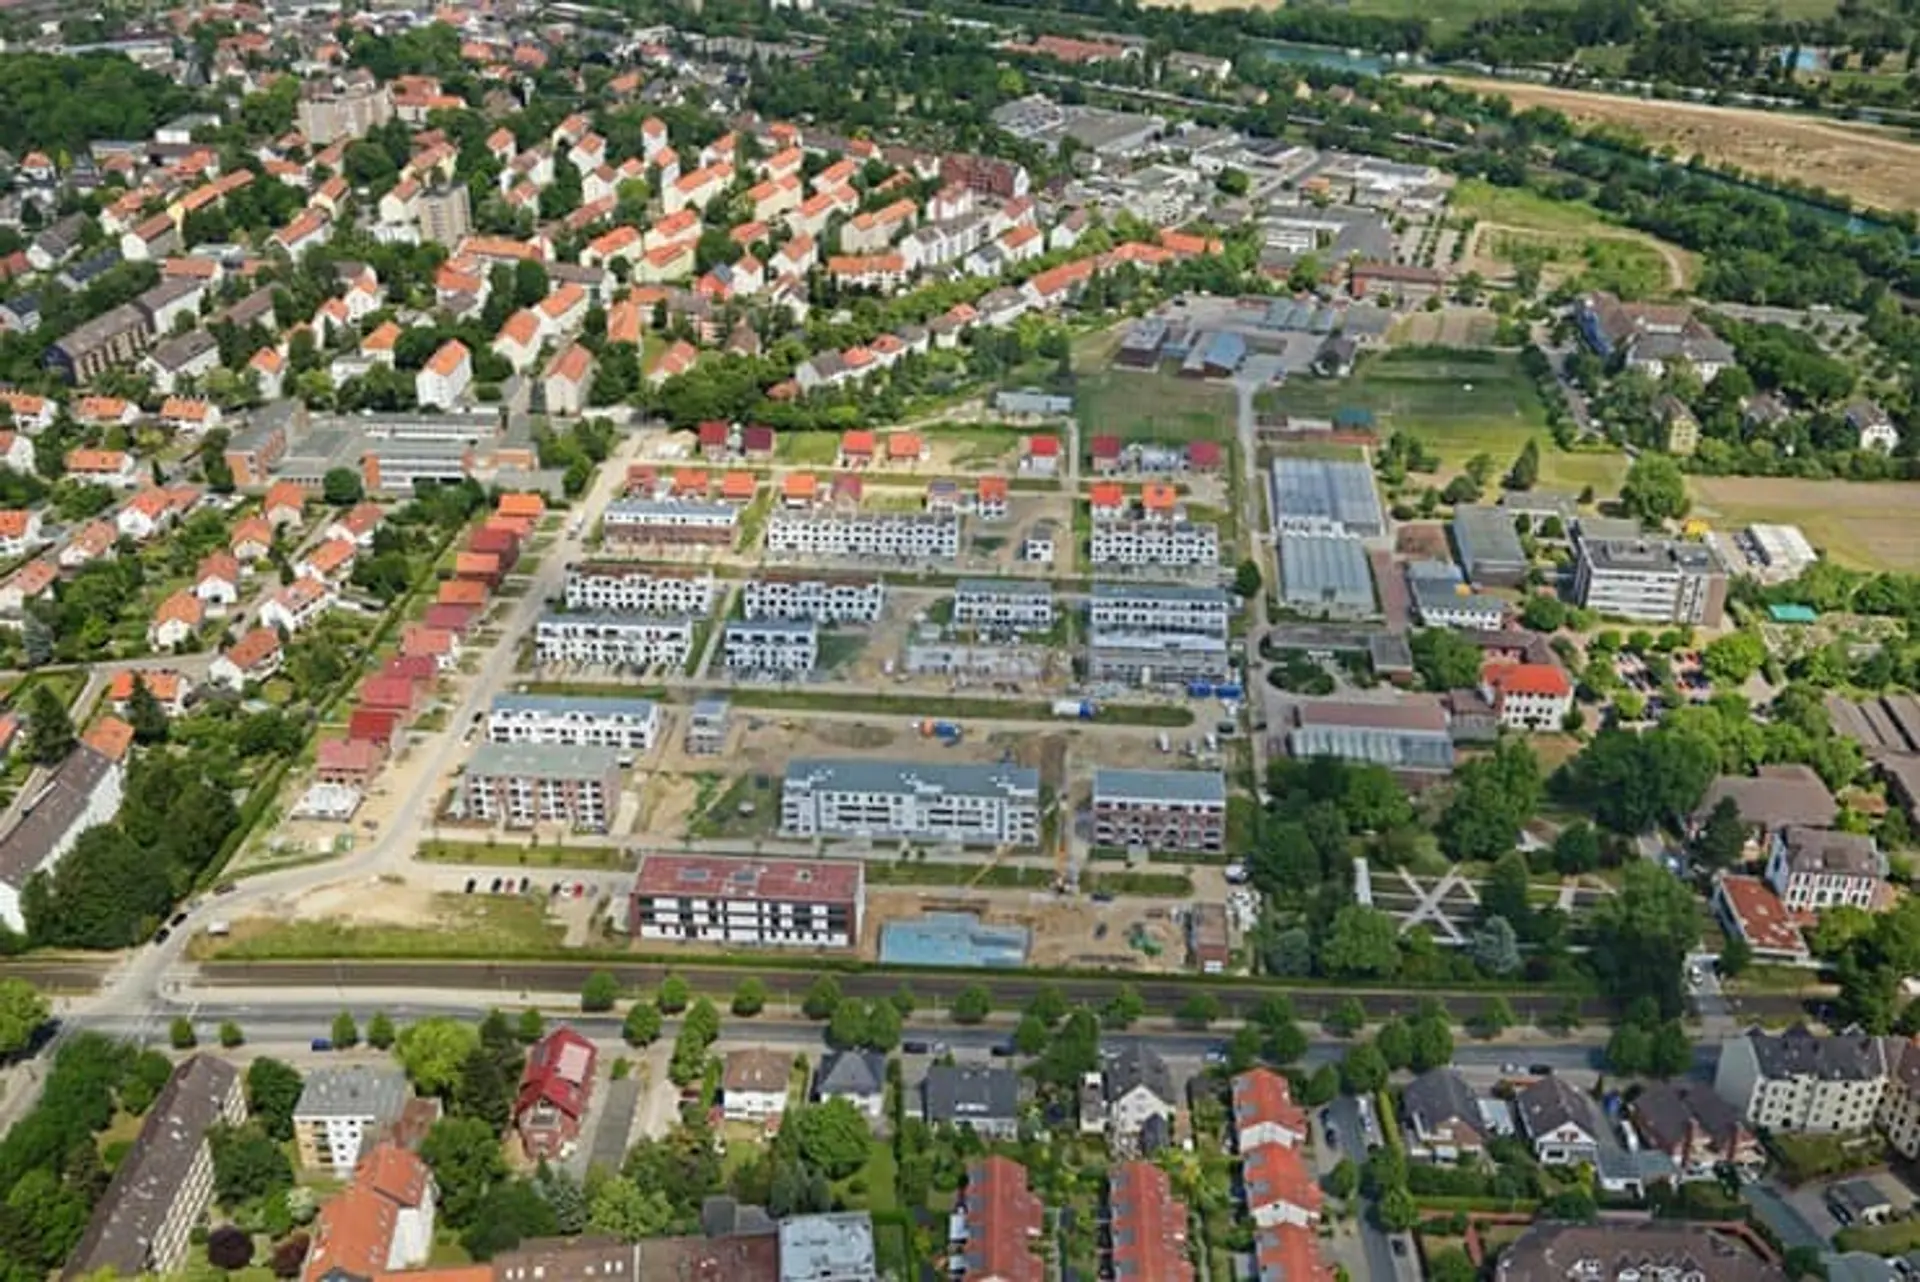 Nachhaltiger Nahwärmeverbund "An der Gartenbauschule" in Hannover-Ahlem, versorgt per Biomethan-BHKW und Brennstoffzelle